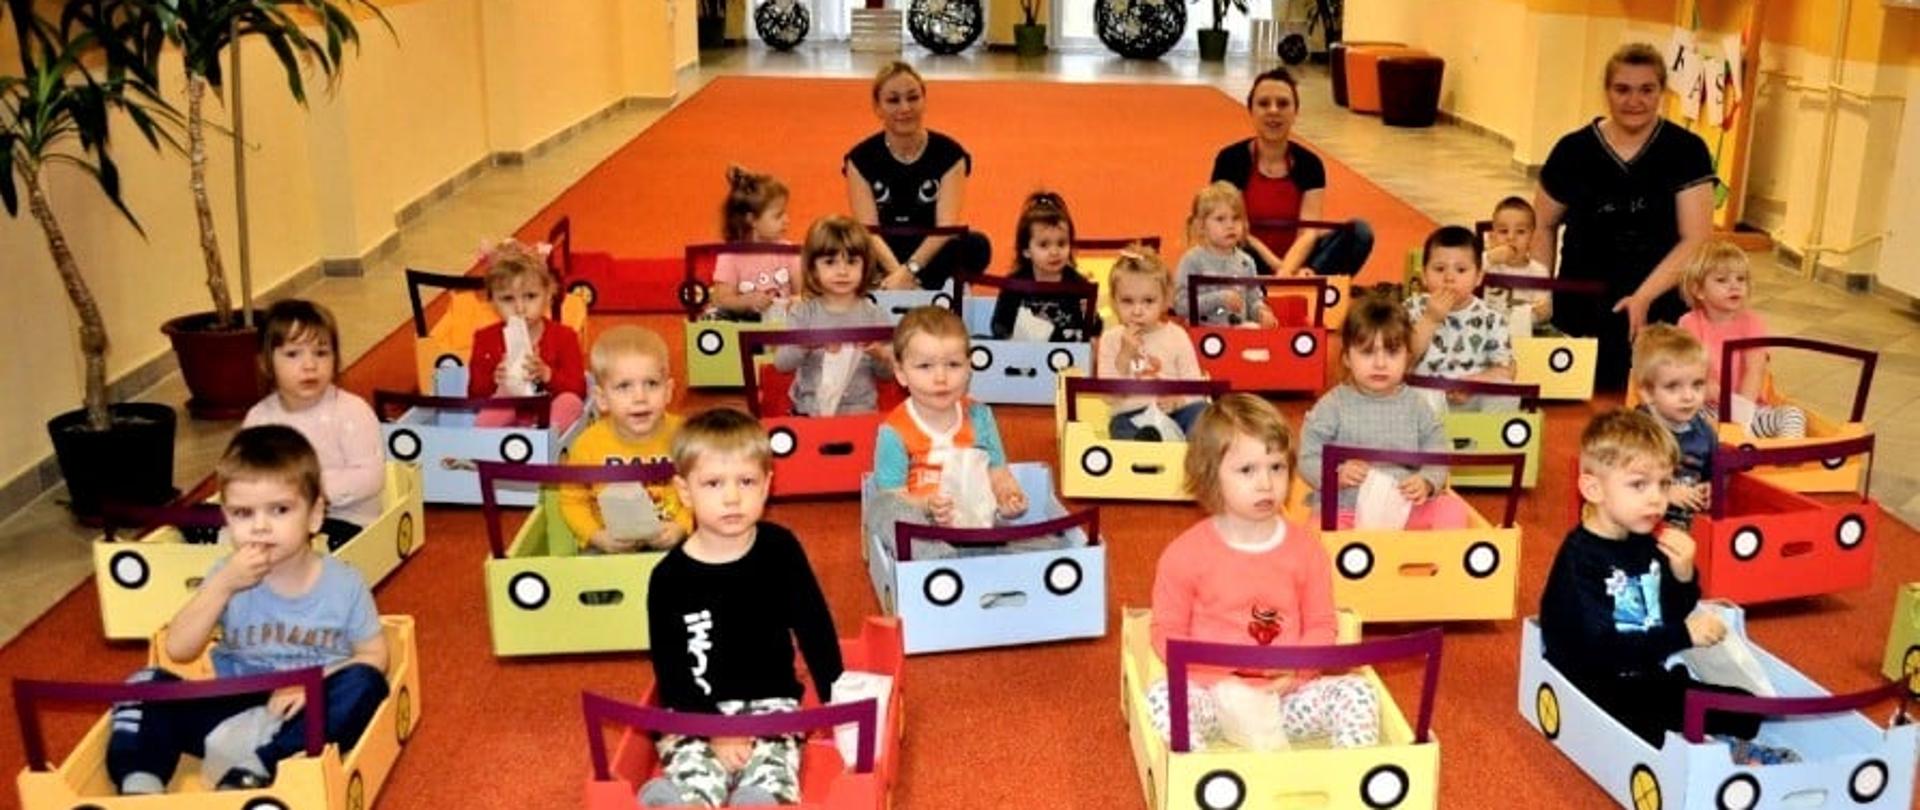 Kilkanaście osób (małych dzieci) siedzi w stworzonych z kartonu samochodach na podłodze. Za nimi, w tle, kucają trzy dorosłe osoby.